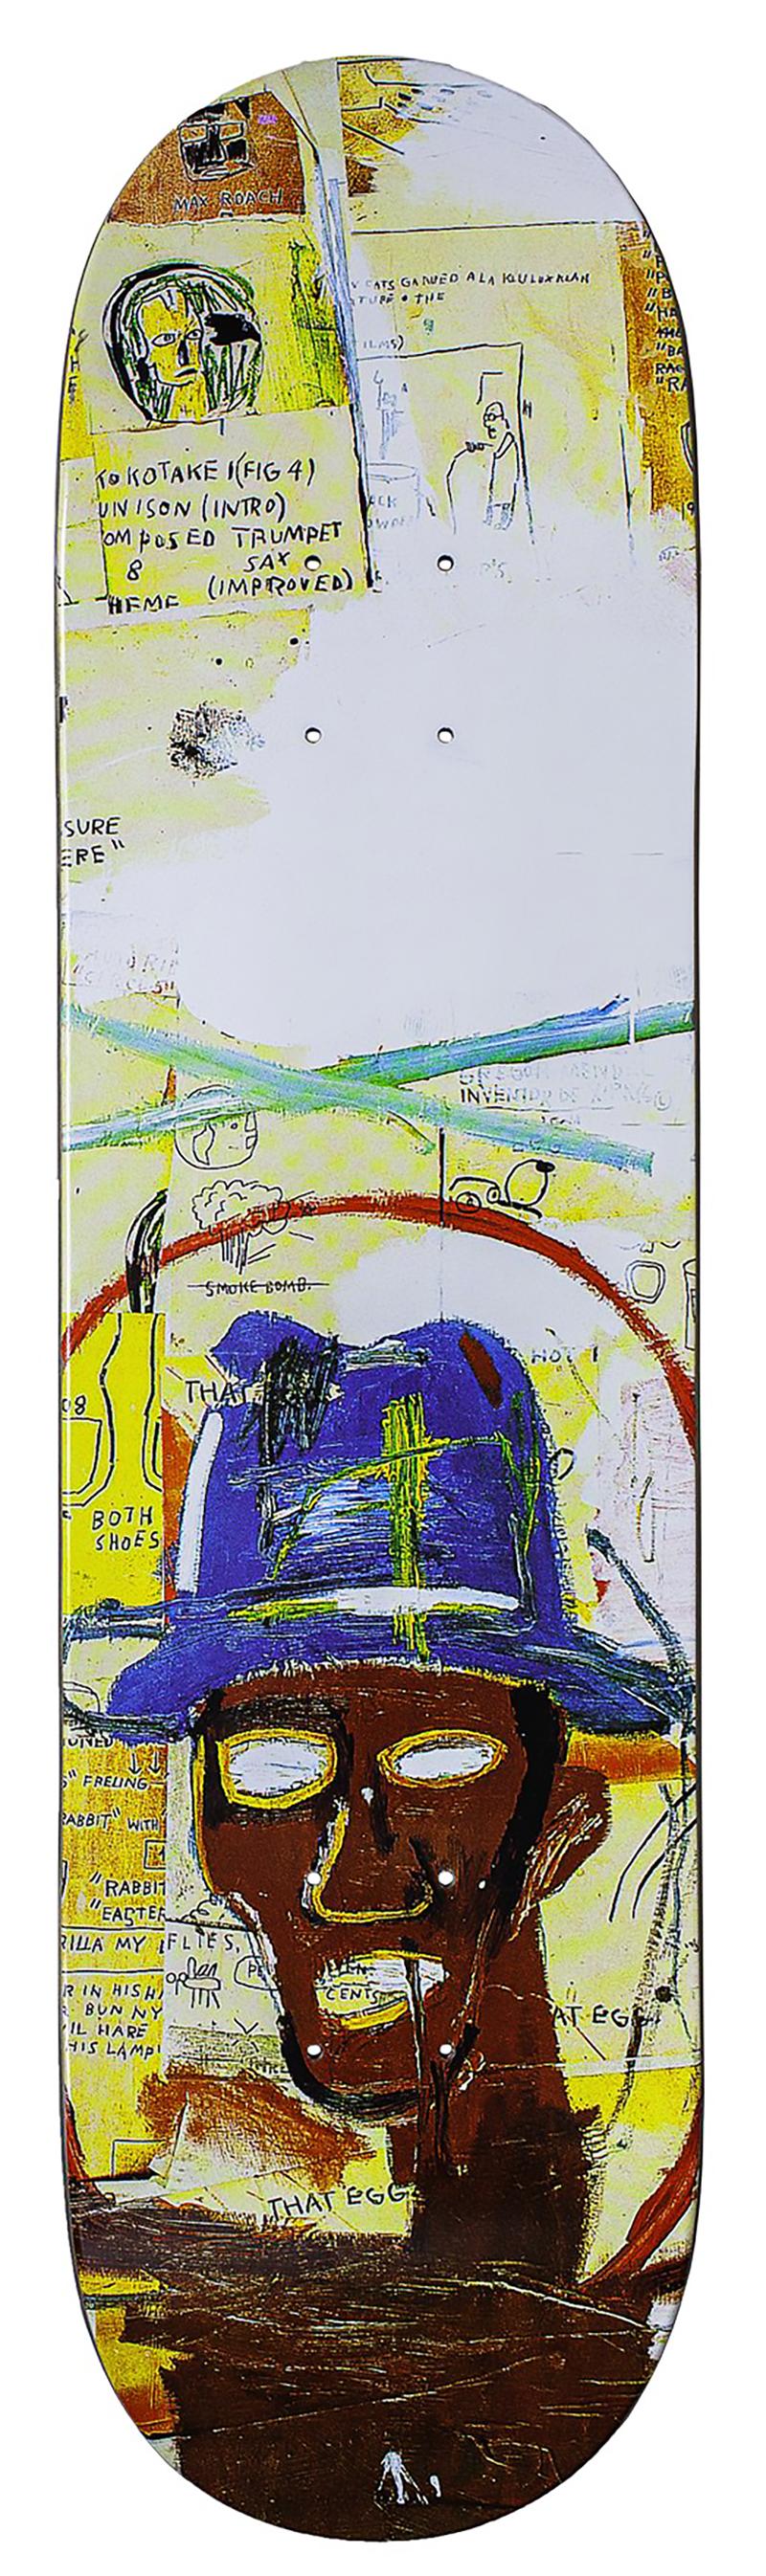 Rom zahlt x Nachlass von Jean-Michel Basquiat Skate Deck aus
Lebendiges, hervorragend gestaltetes Skateboard-Deck, lizenziert vom Estate of Jean Michel Basquiat in Zusammenarbeit mit Artestar, mit einer Reproduktion des kultigen Basquiat-Werks